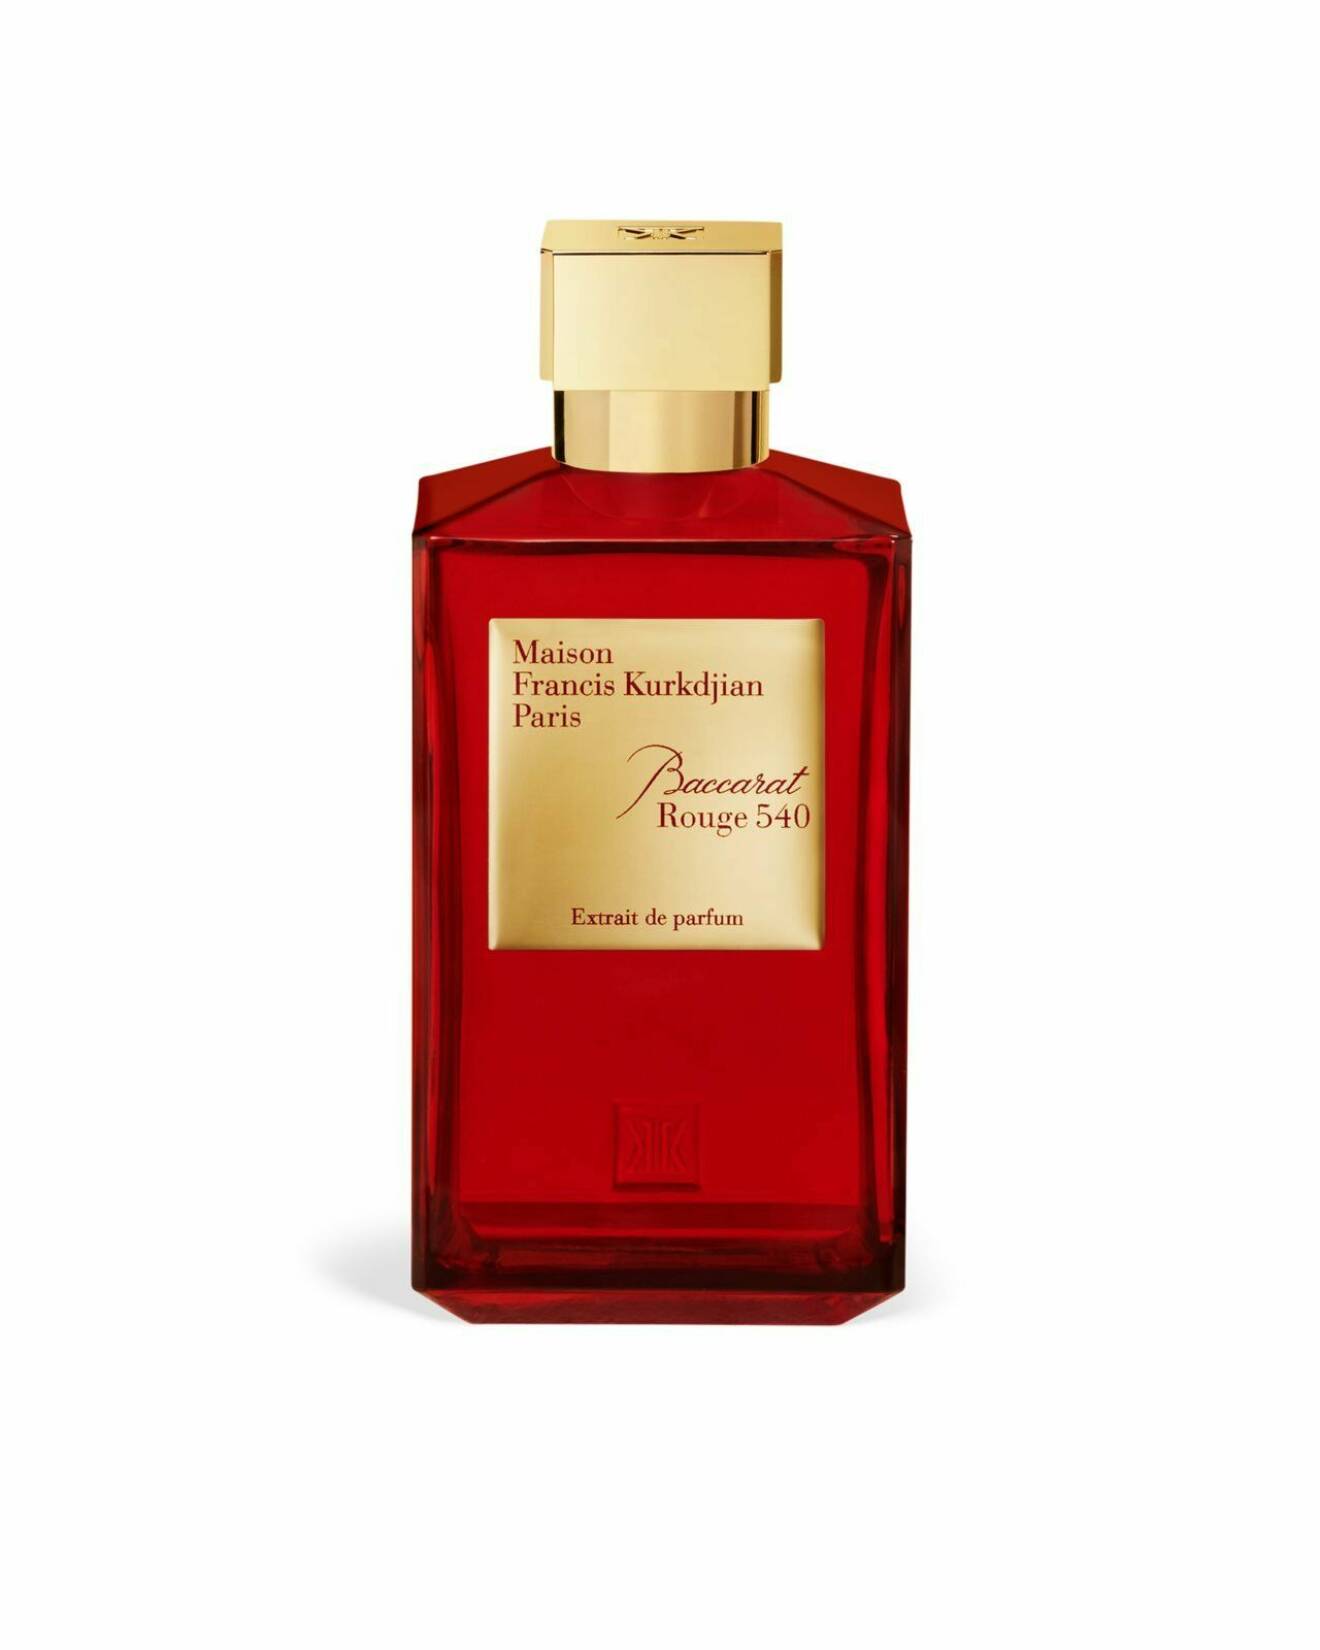 världens mest kända parfym med saffran från maison francis kurkdjian